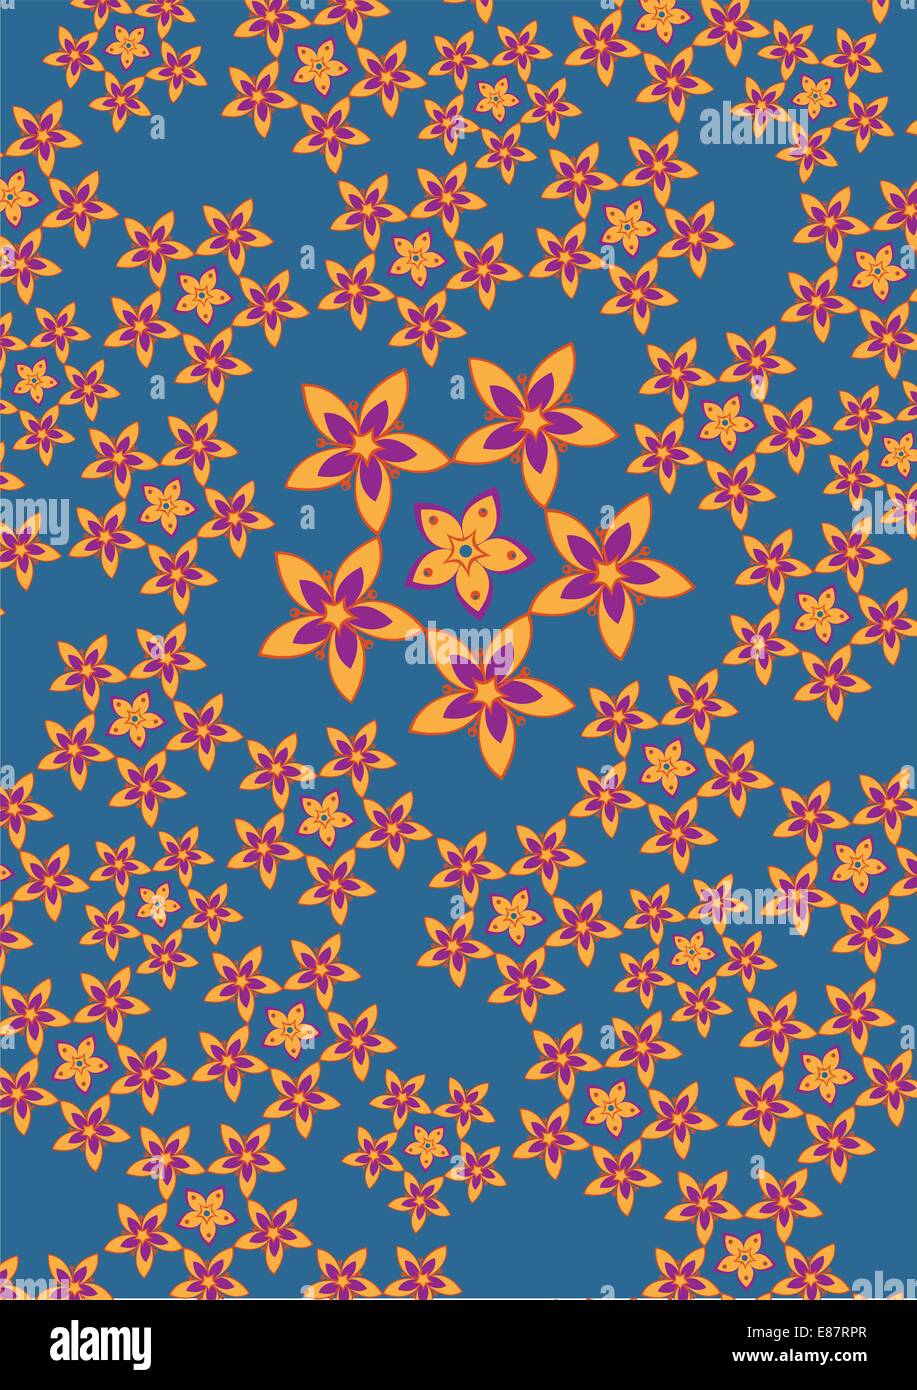 Illustrazione Vettoriale fo funky fiori pattern astratti su sfondo blu Illustrazione Vettoriale